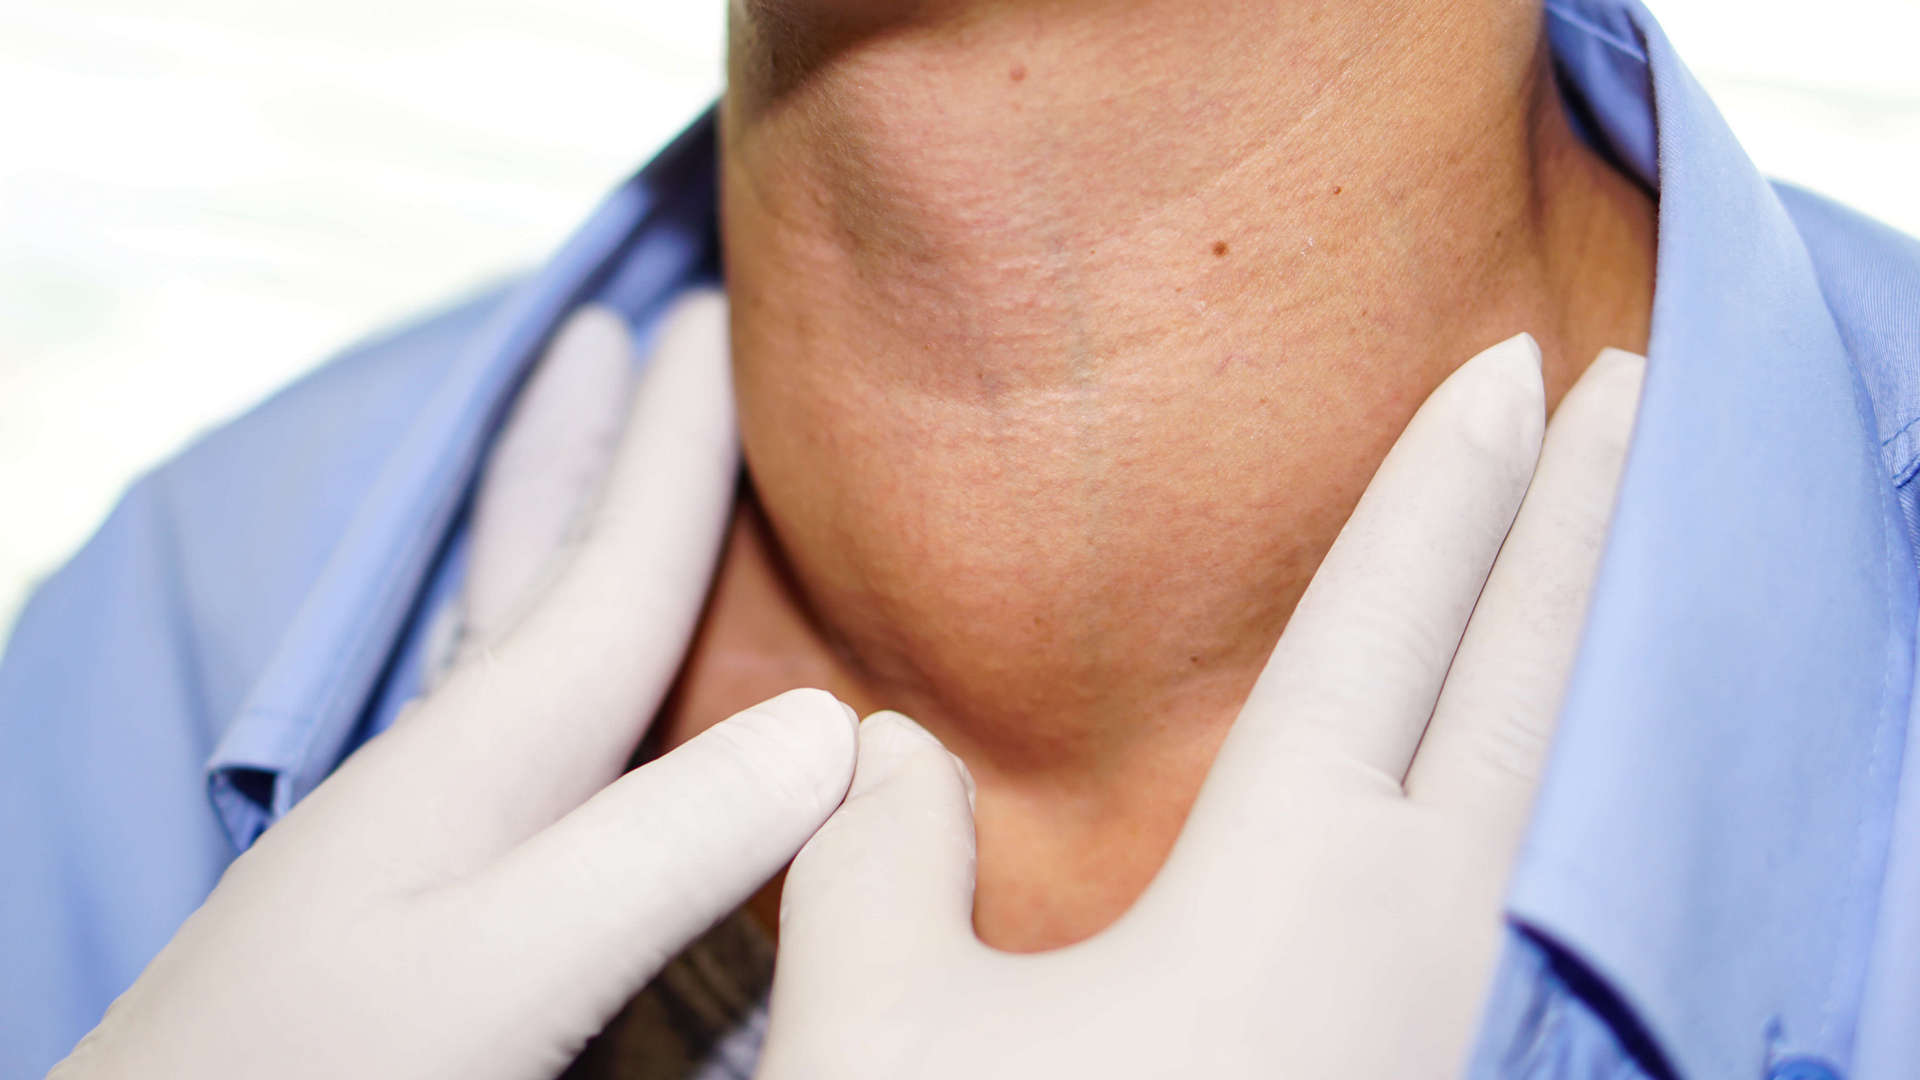 Что нужно делать при обнаружении узла щитовидной железы?